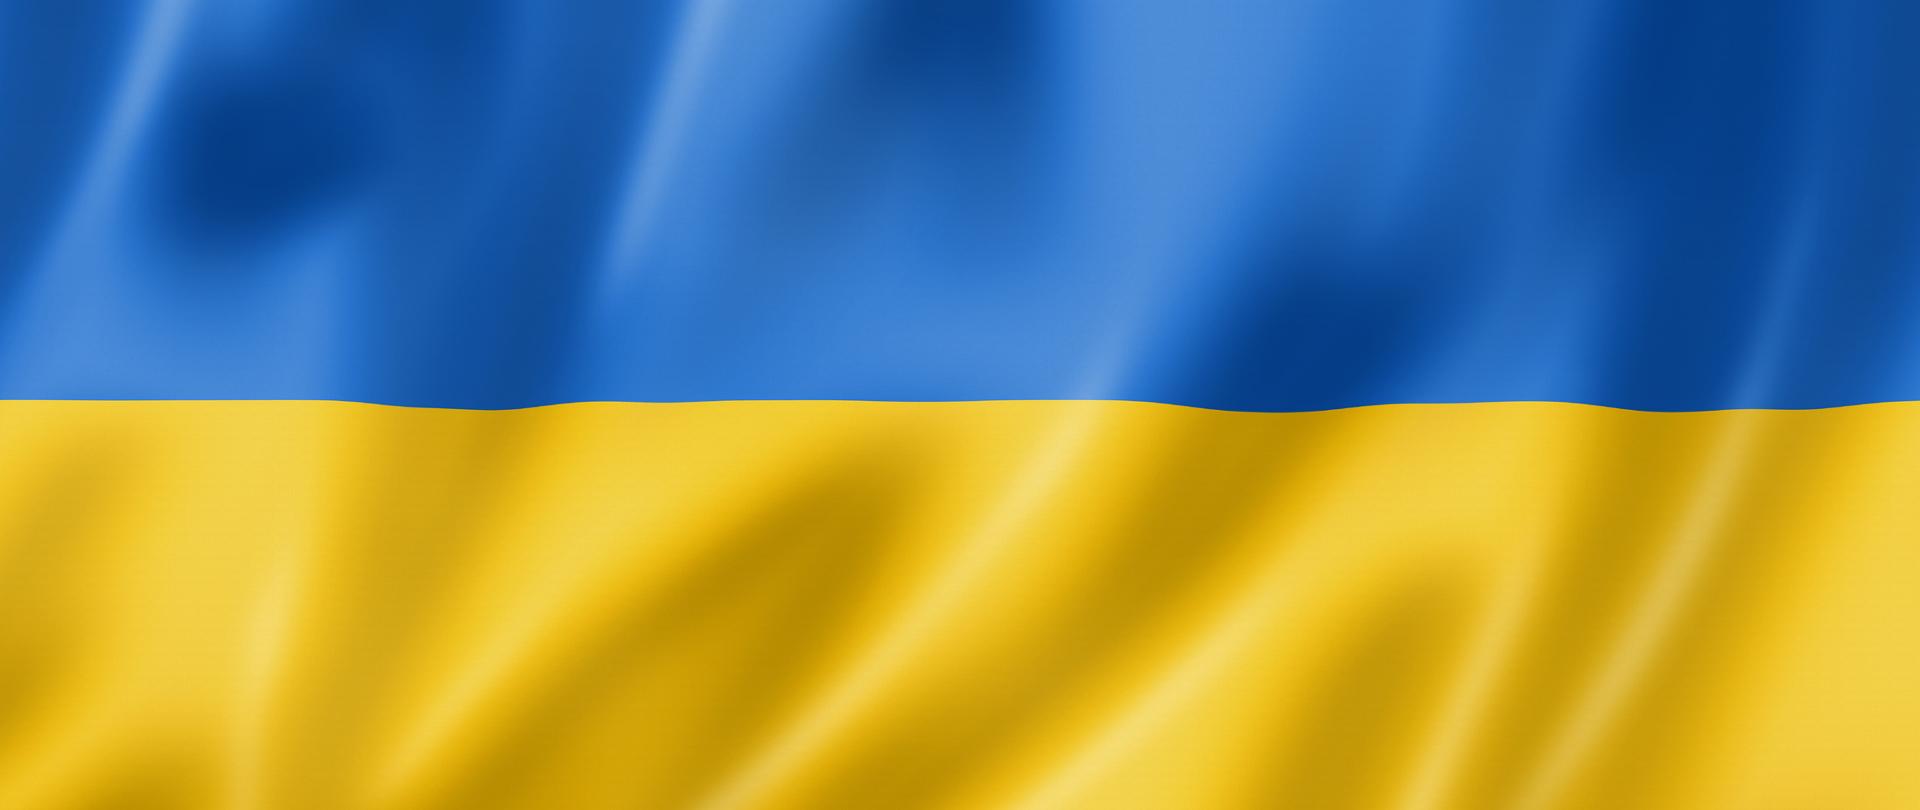 Flaga Ukrainy – prostokąt podzielony na dwa poziome pasy: niebieski i żółty.